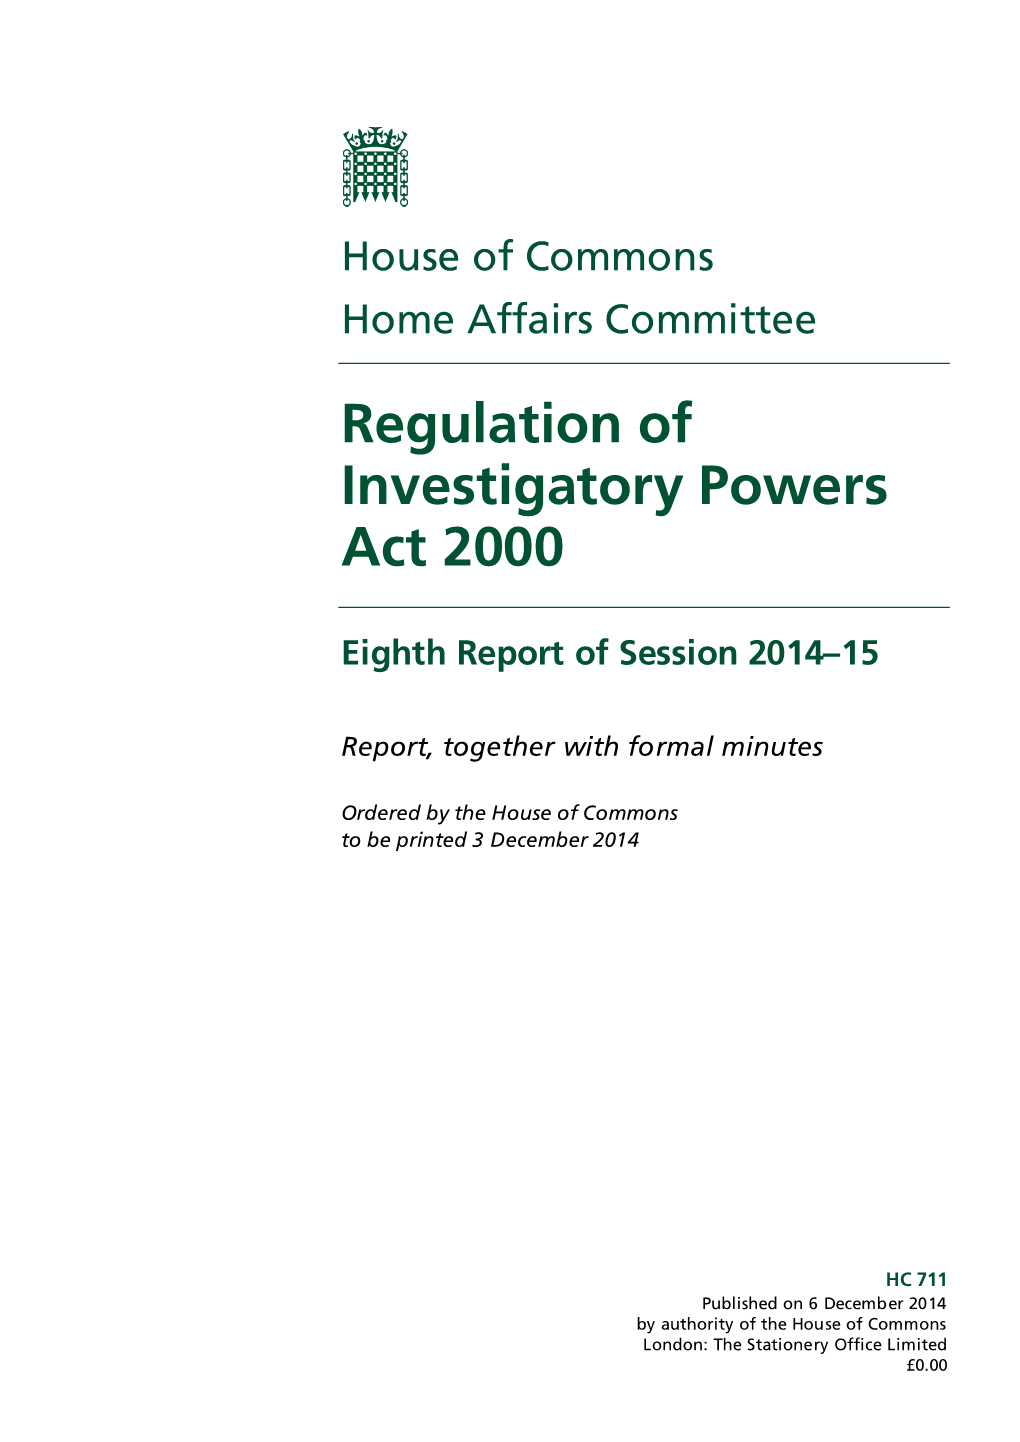 Regulation of Investigatory Powers Act 2000